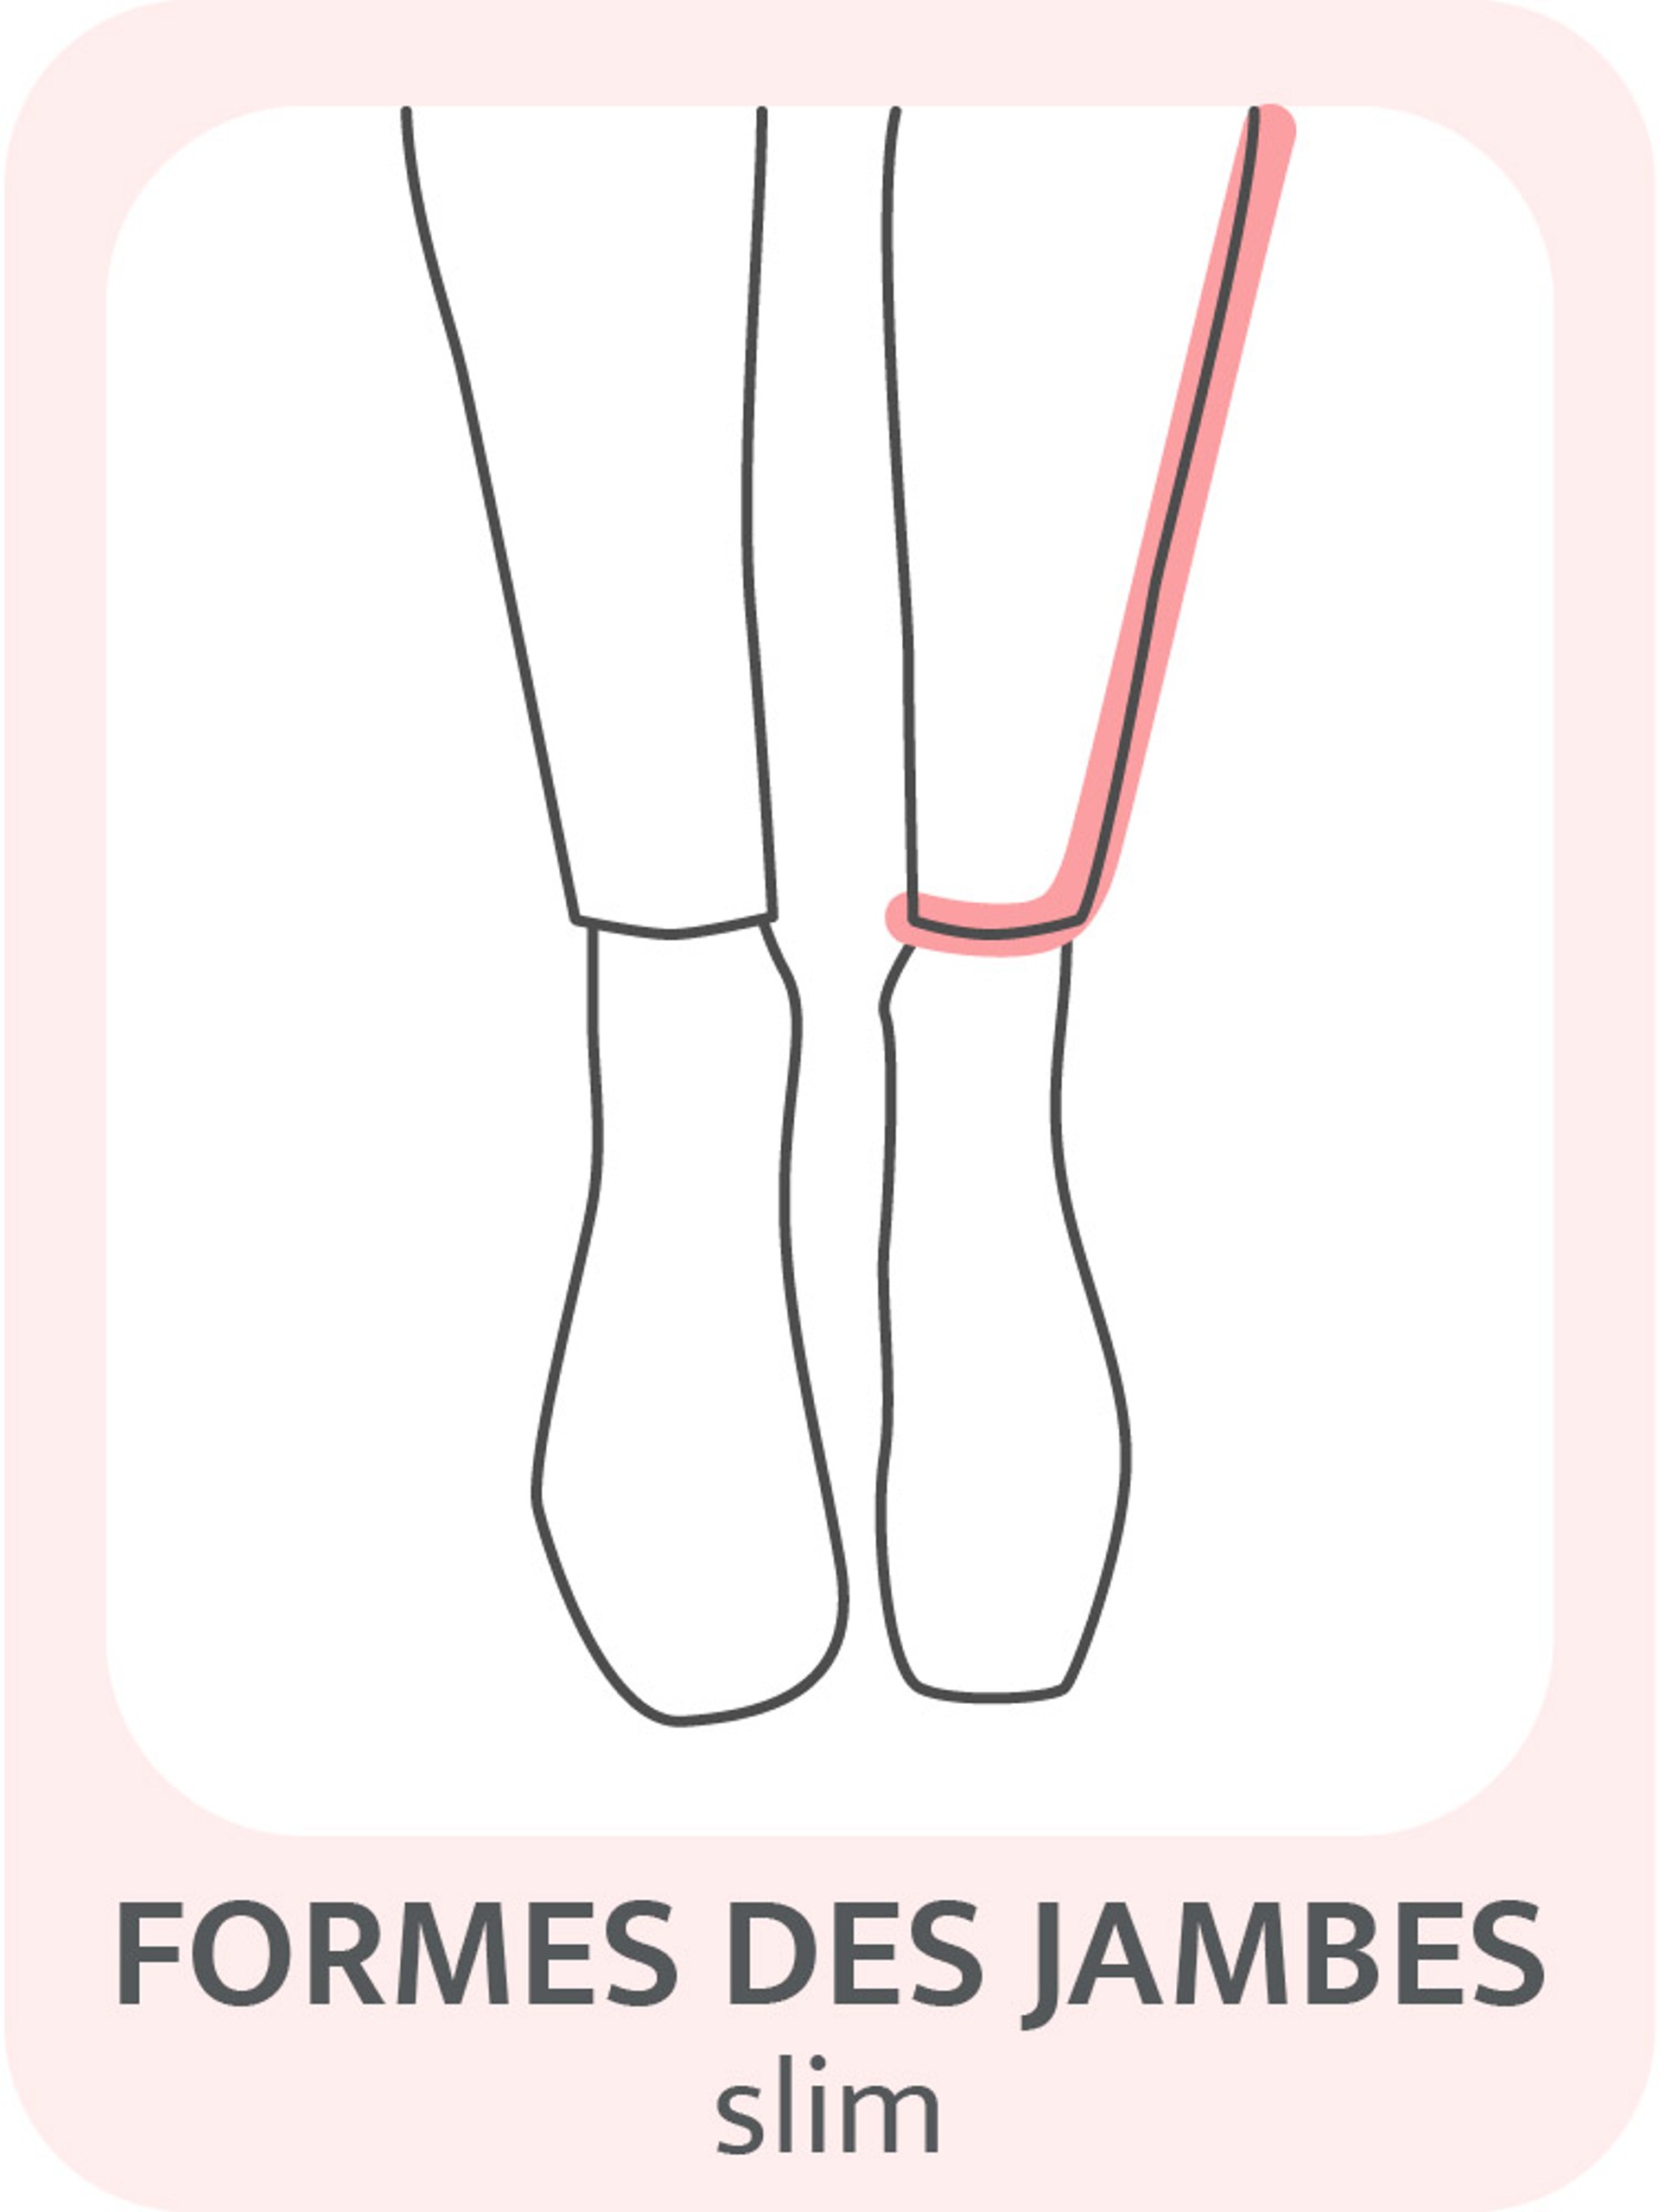 Formes des jambes slim